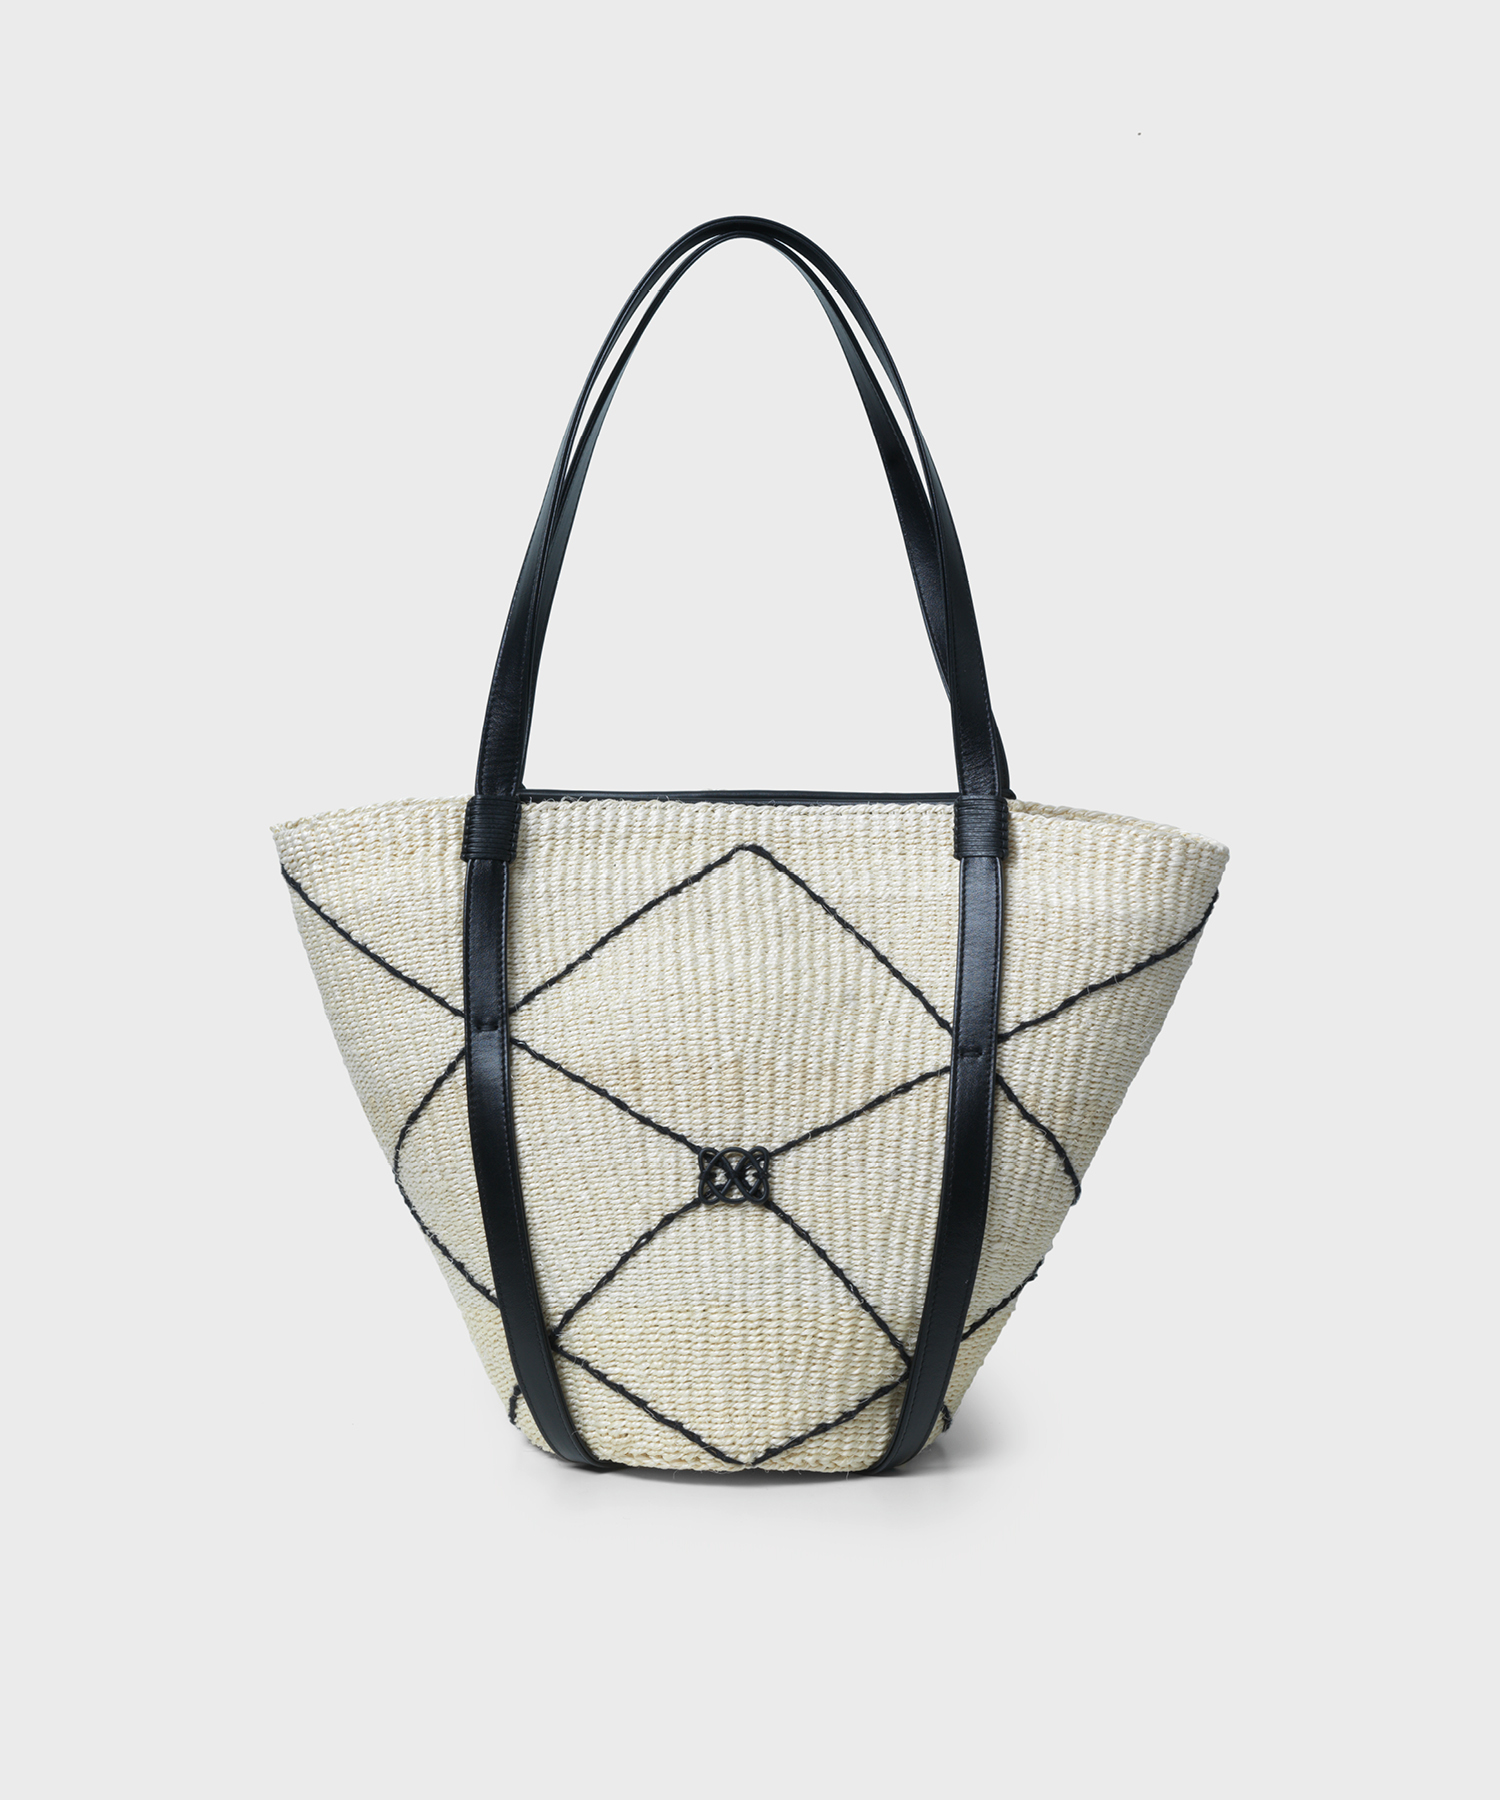 CC Basket Bag in Black Leather